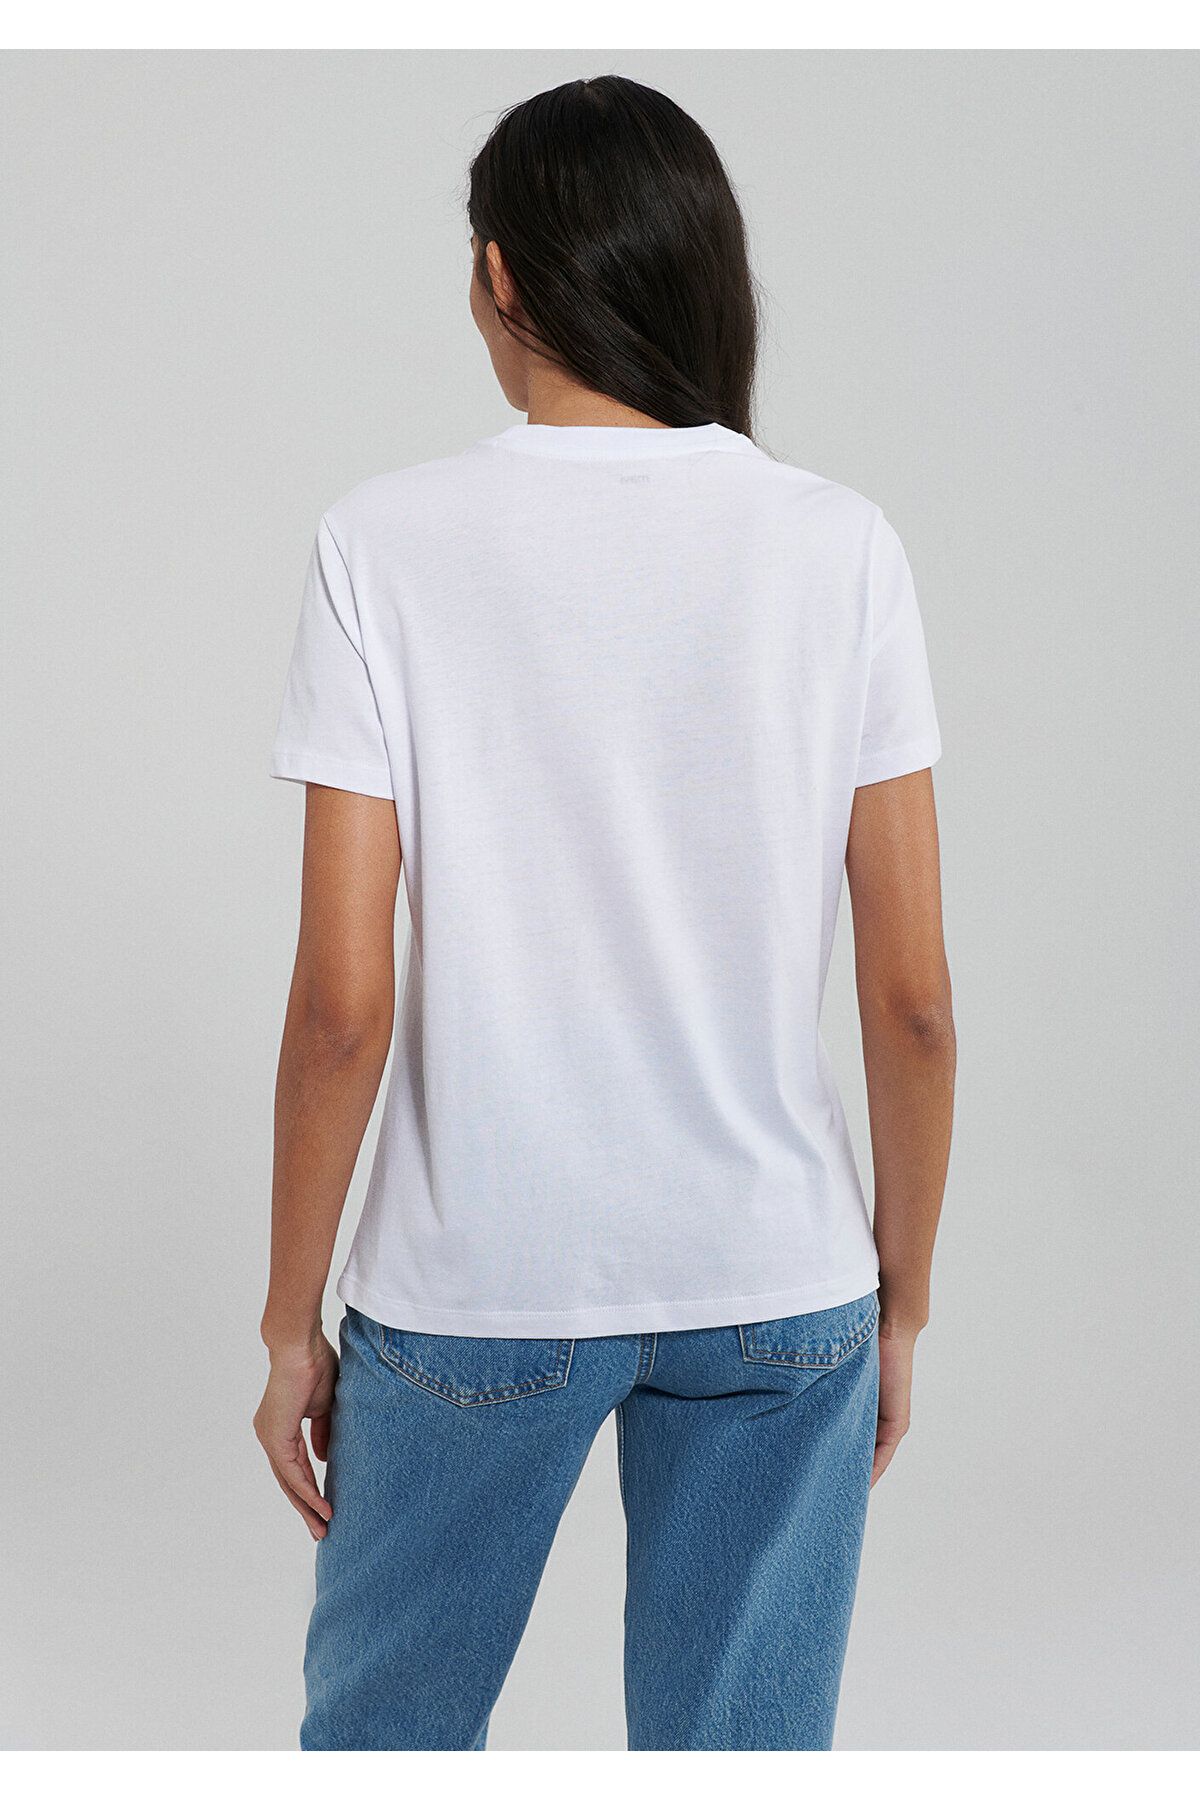 Mavi تی شرت سفید چاپ شده مناسب / برش معمولی 1612242-620